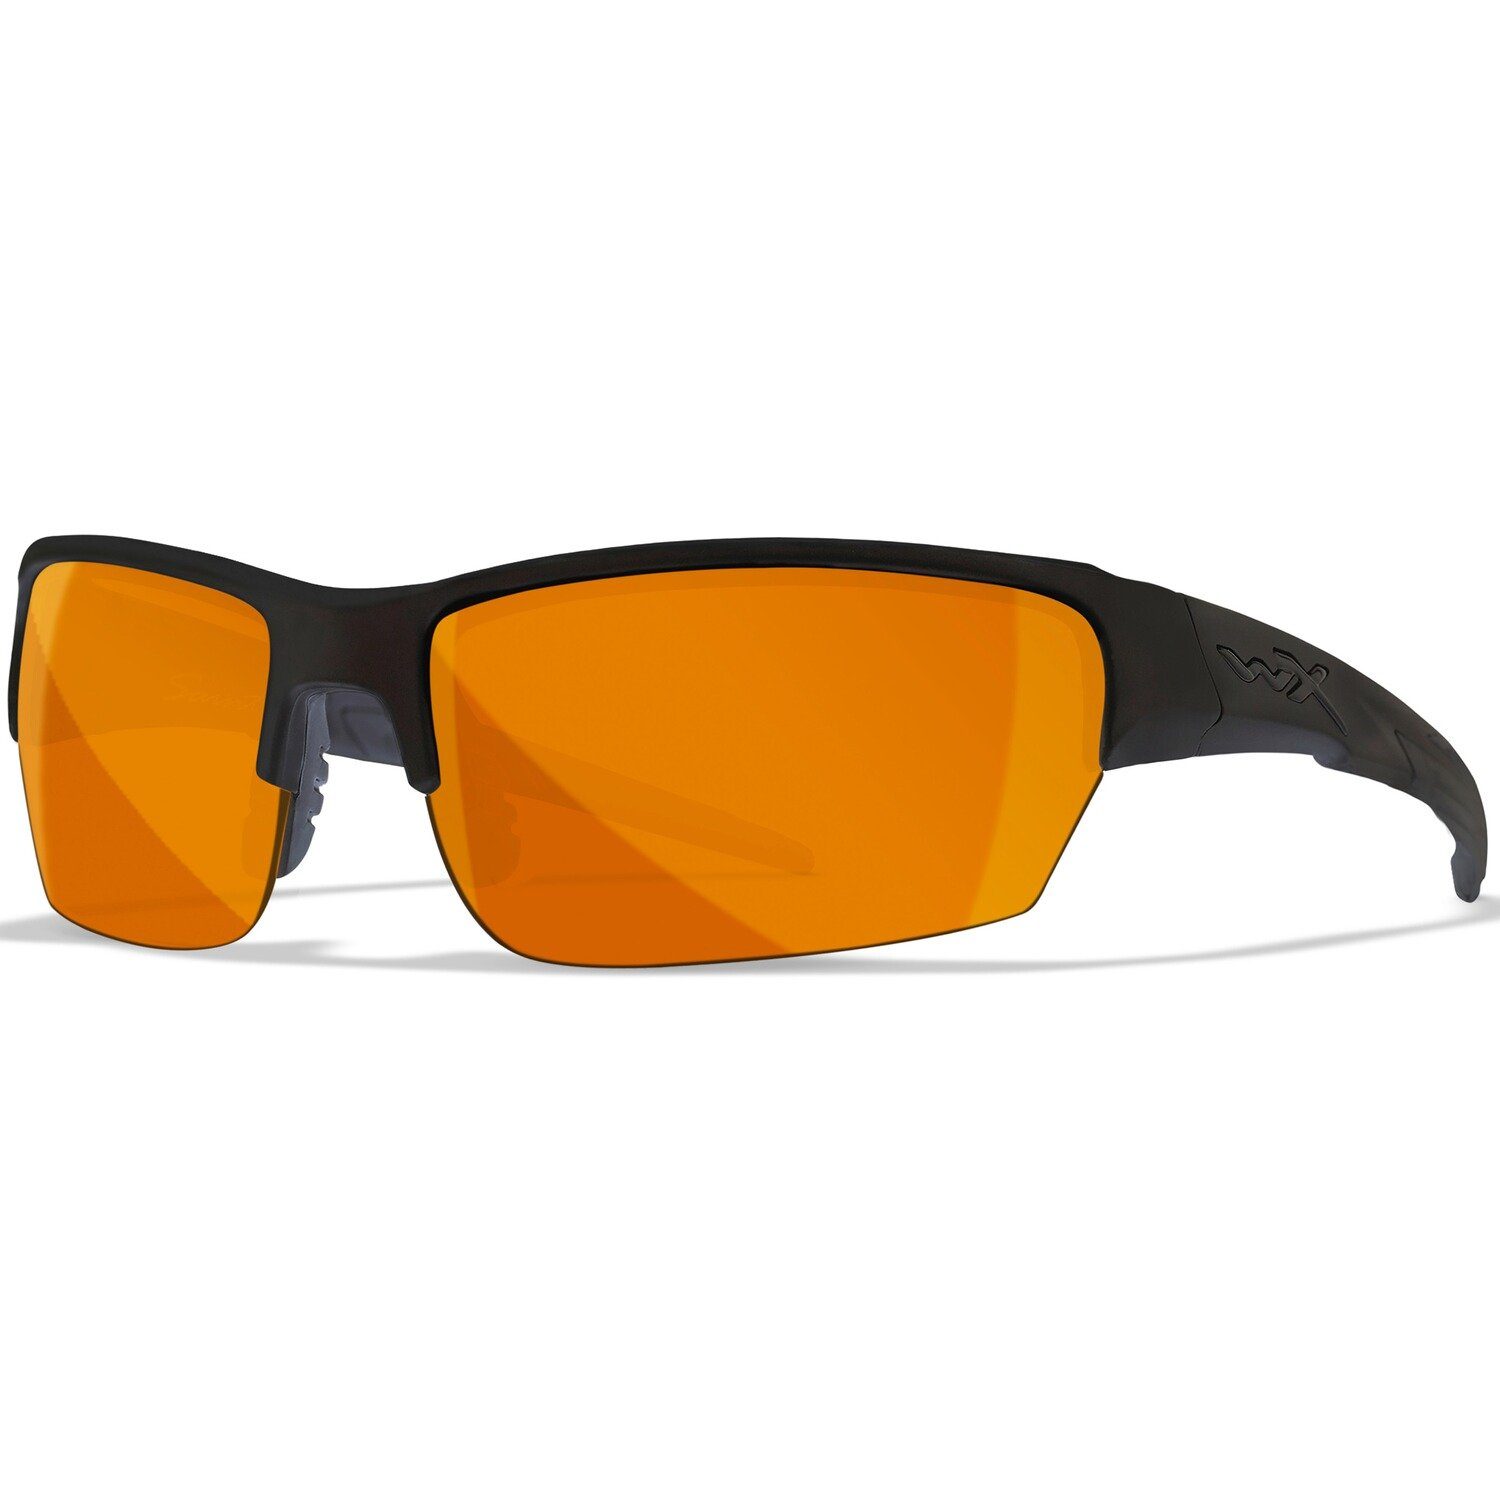 Sonnenbrille Orange WX Set Wiley X Grau/Klar/Helles Brille Set, Gläser: Saint